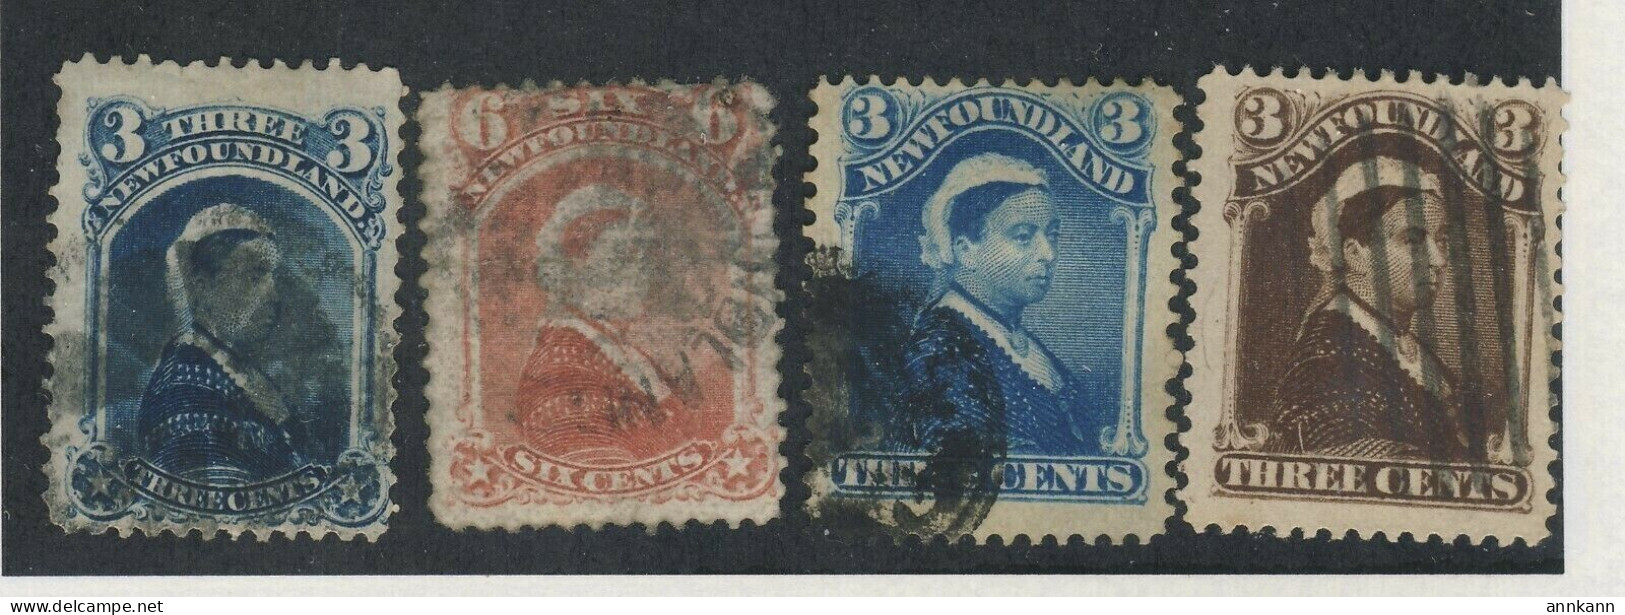 4x Newfoundland Used Stamps; #34-3c F #35-6c F #49-3c F & #51-3c VF GV= $76.00 - 1857-1861